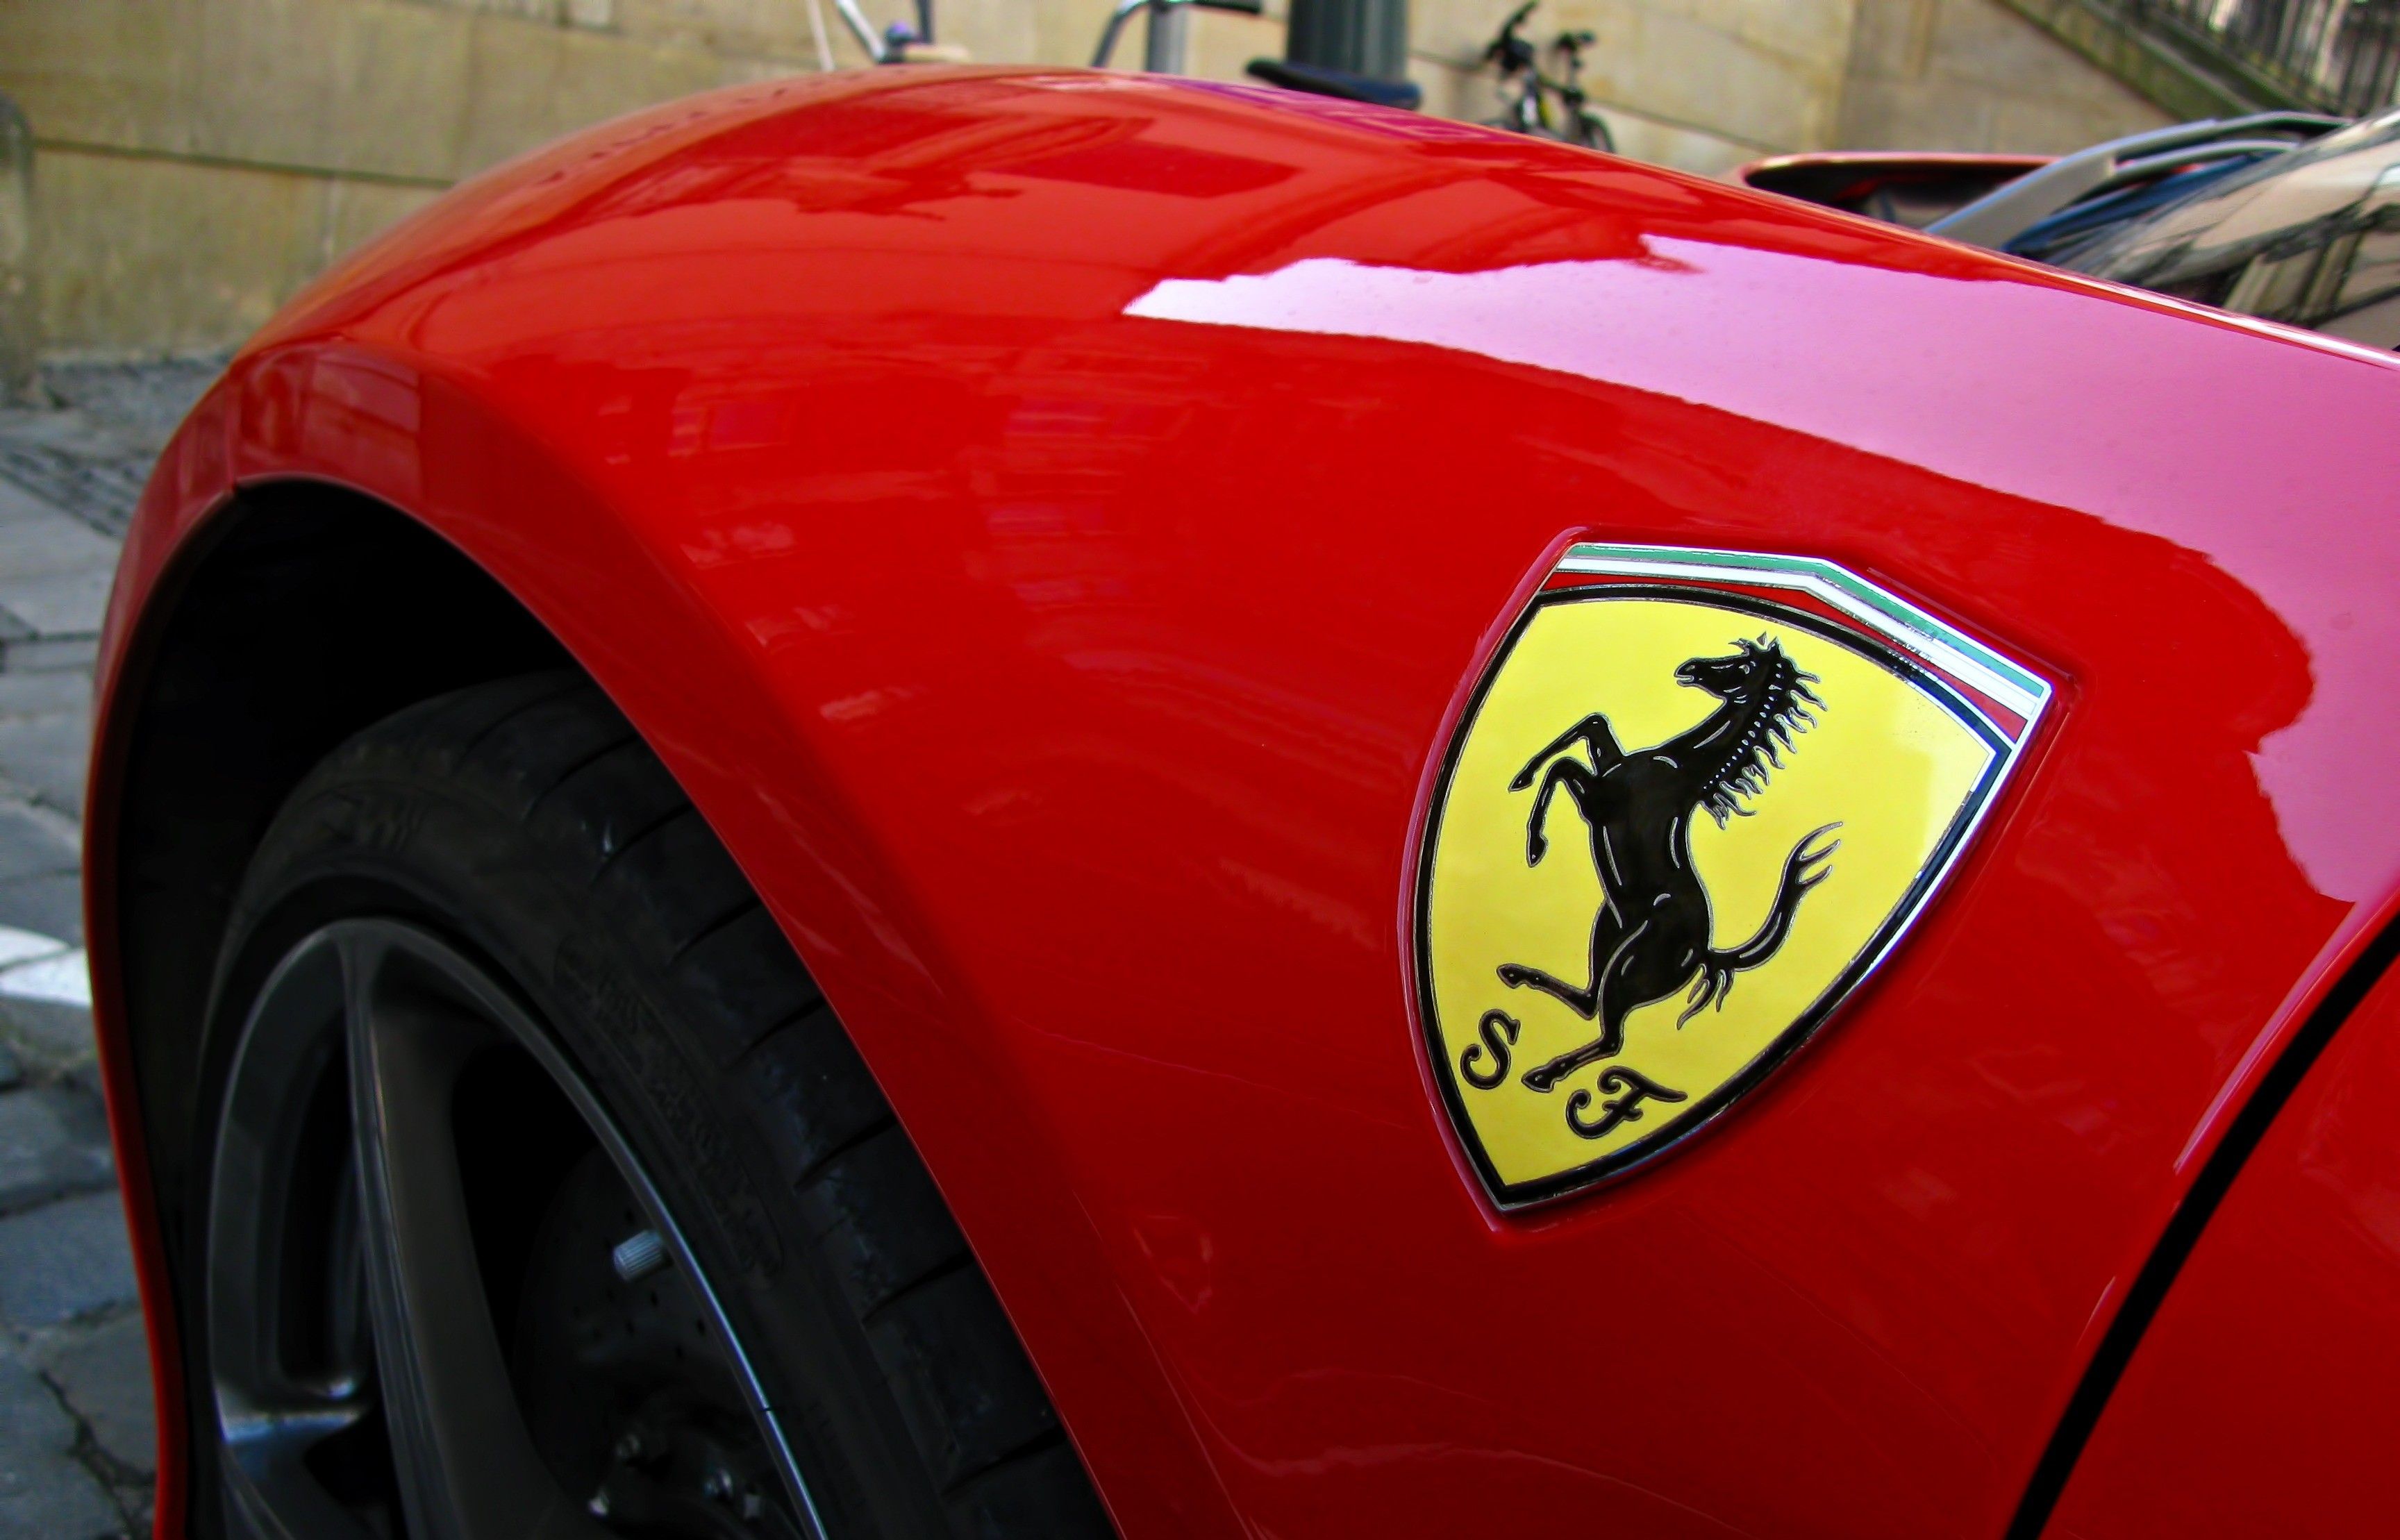 Logotipo de Ferrari en un coche rojo (Transporte y tráfico) ferrari,brno,automóviles,vehículos,logotipo,coches,rápido